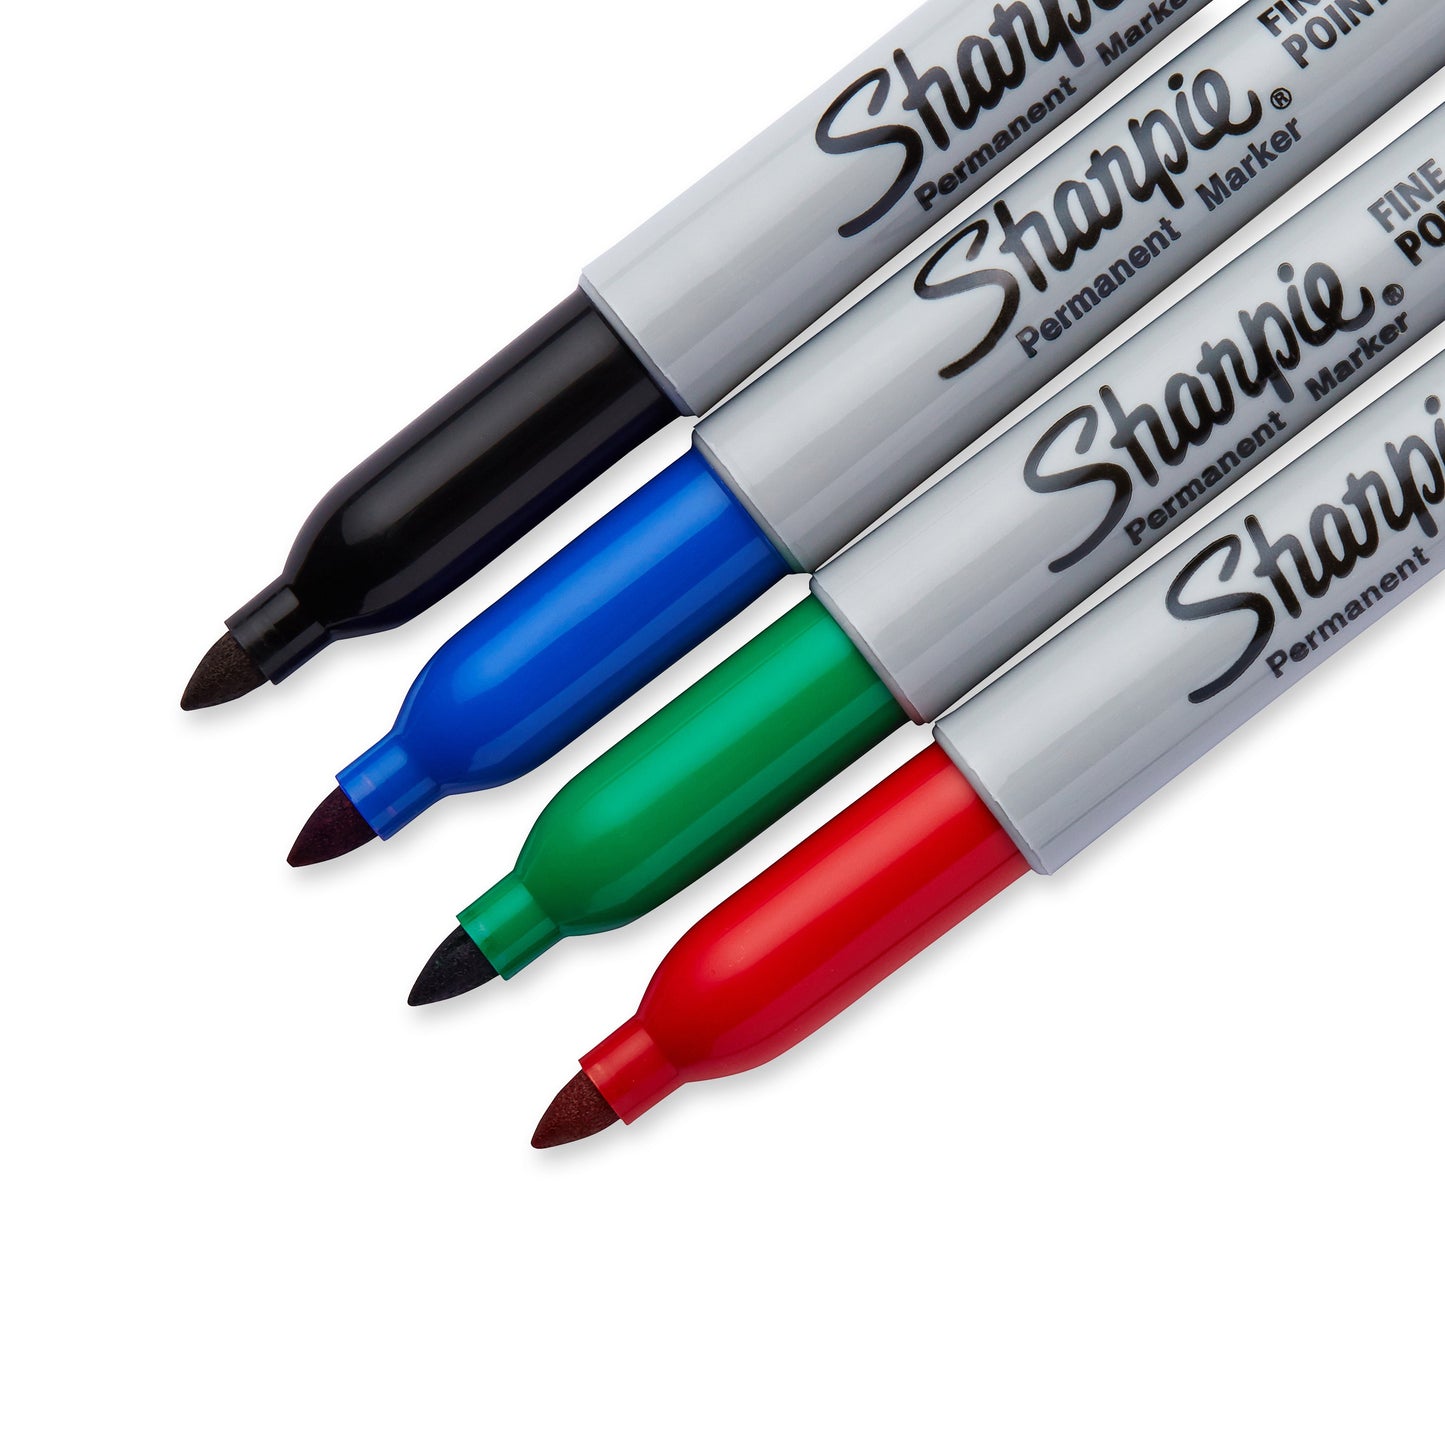 SHARPIE® Fine Marker Basic 1.0mm, 4-pakk